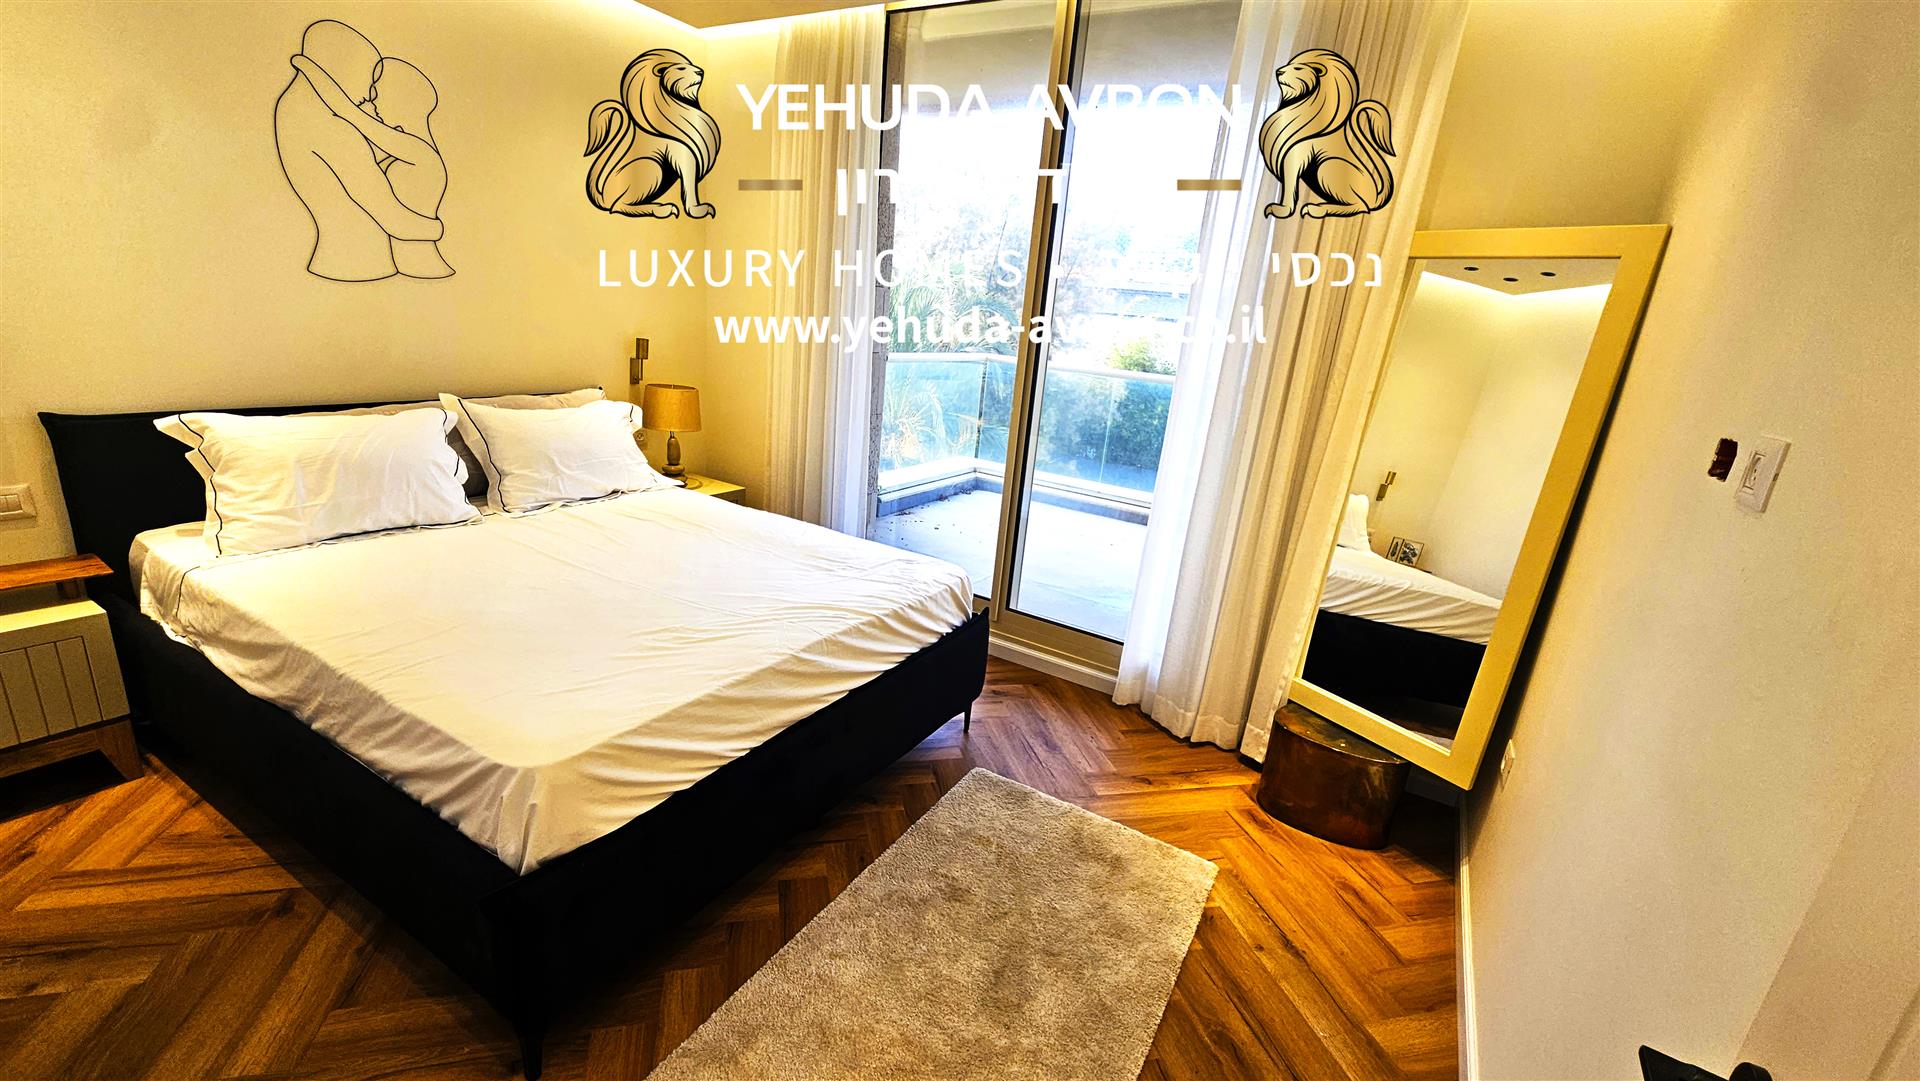 Zu verkaufen in Herzliya Pituach, eine luxuriöse 2,5-Zimmer-Wohnung in Meeresnähe